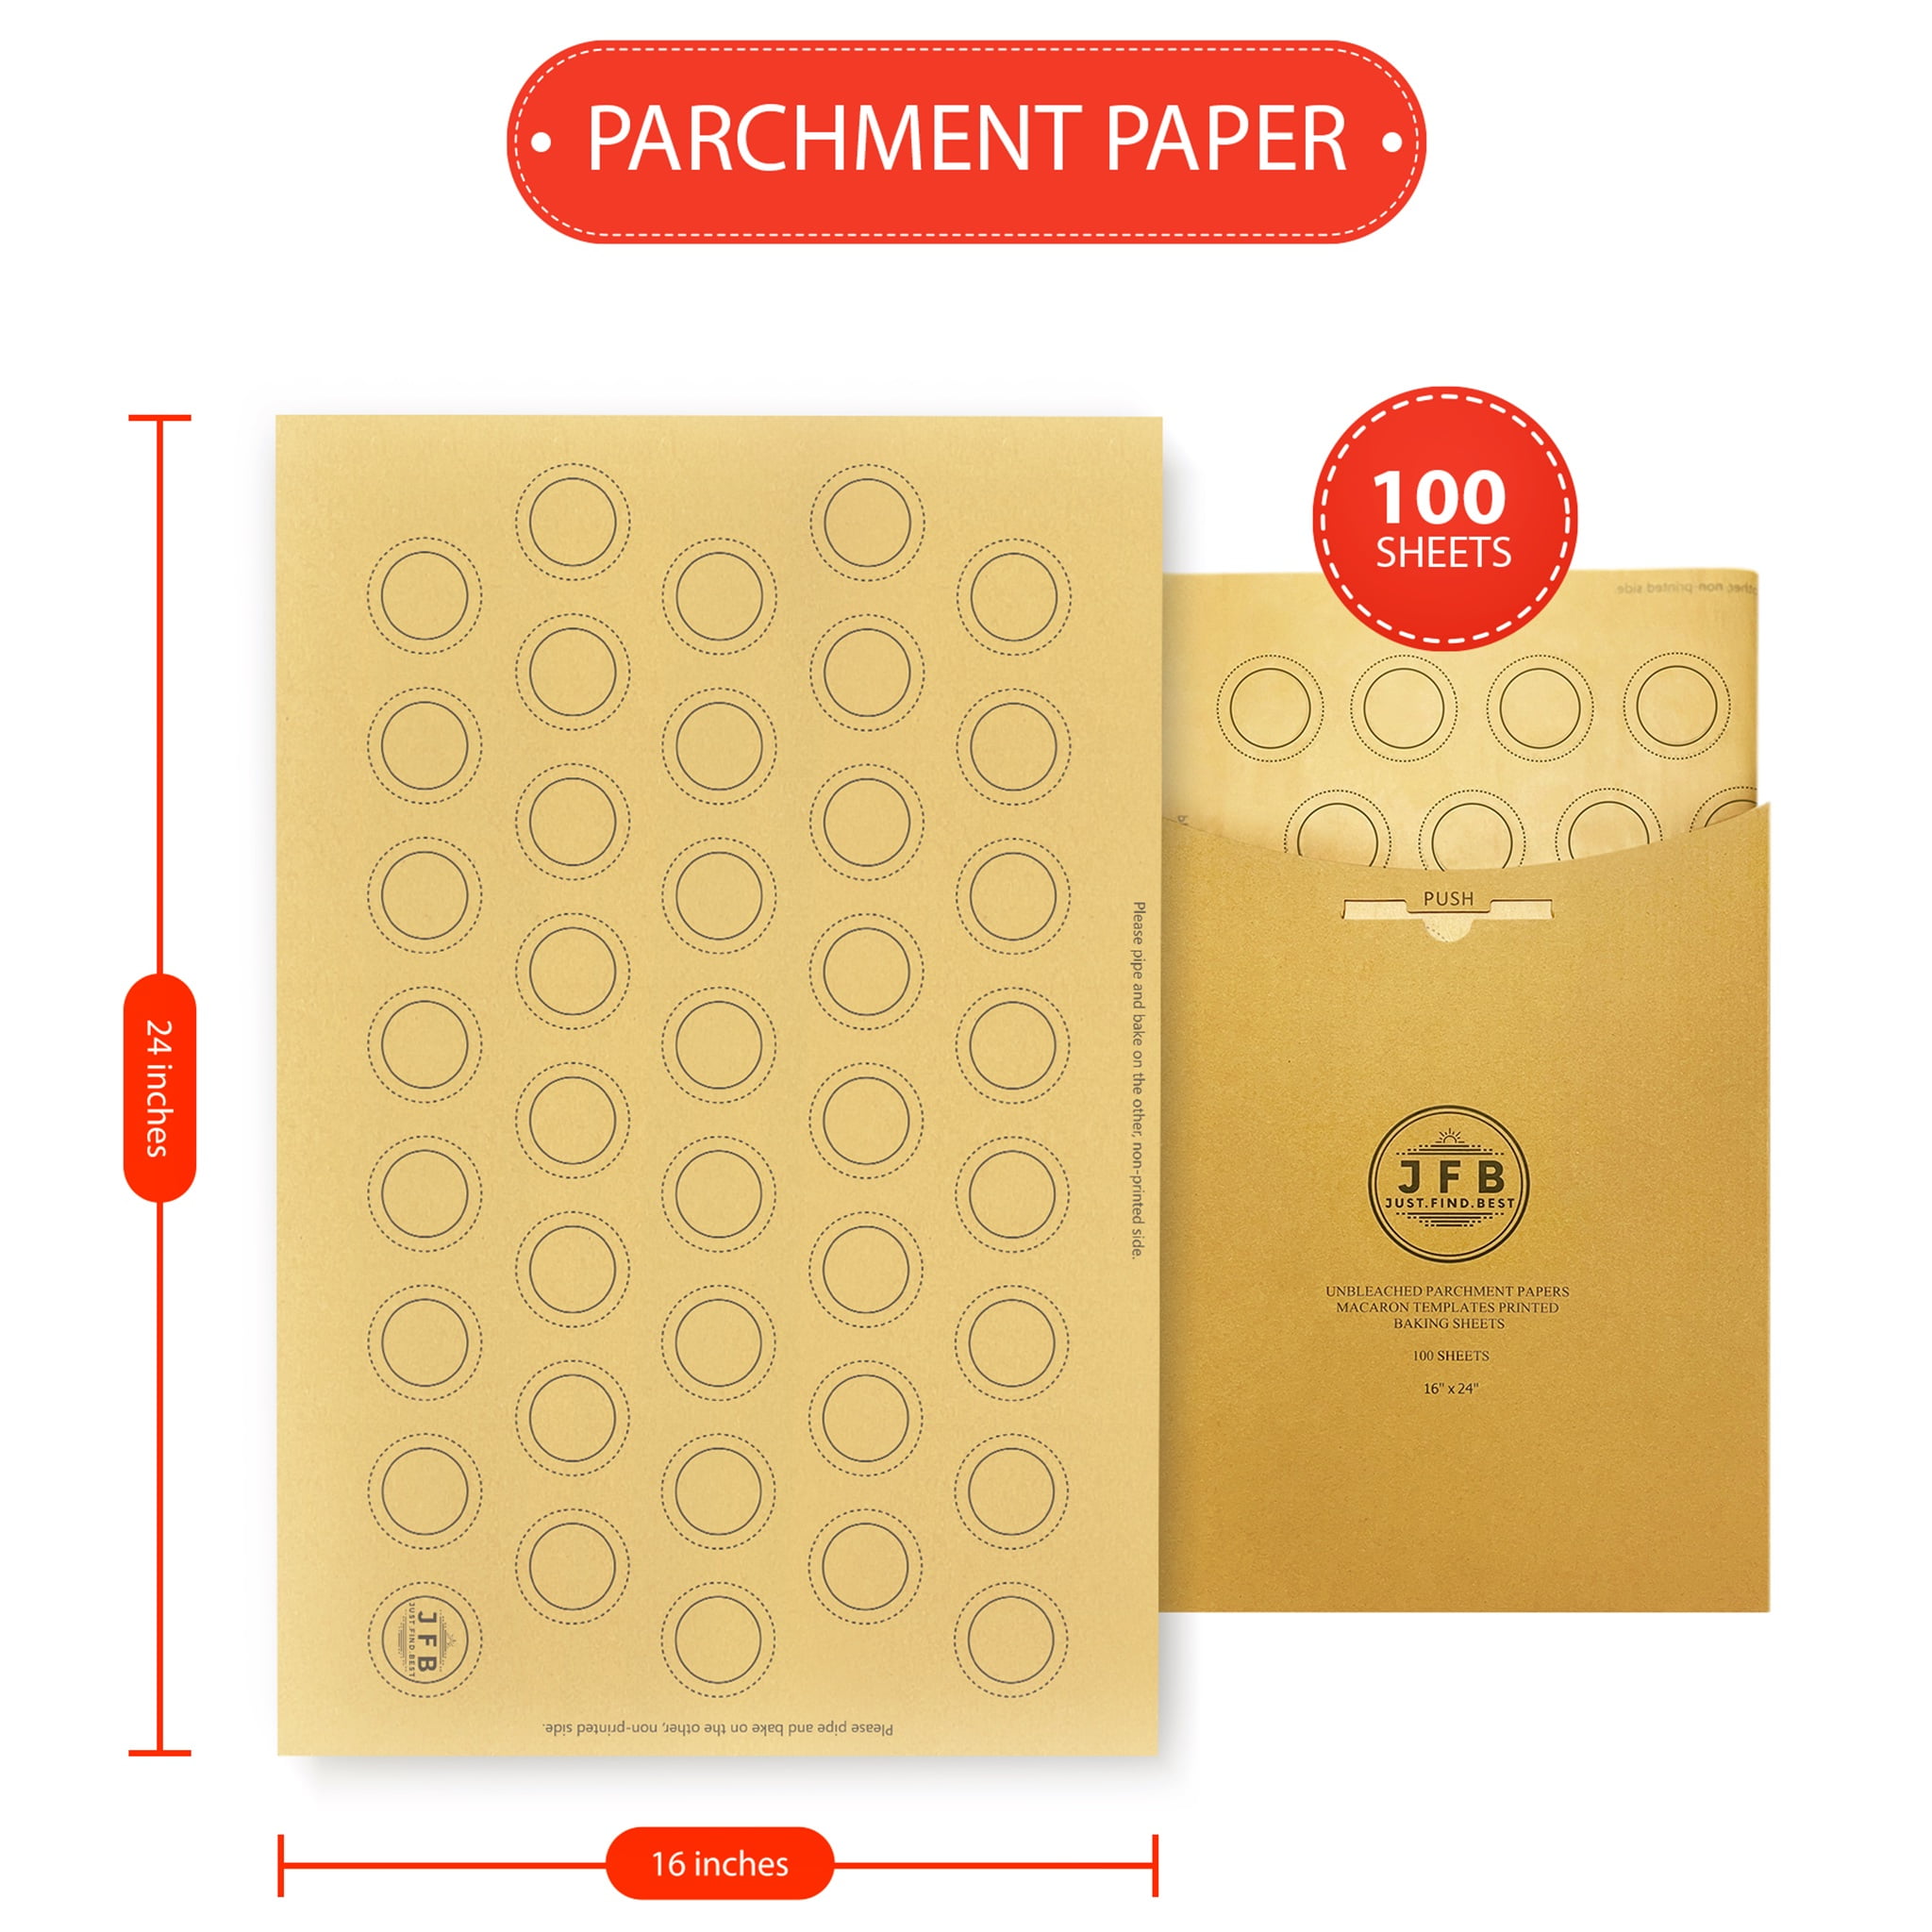 Katbite 100 Pcs Parchment Paper Sheets,16x24 Inches Non-Stick Precut B